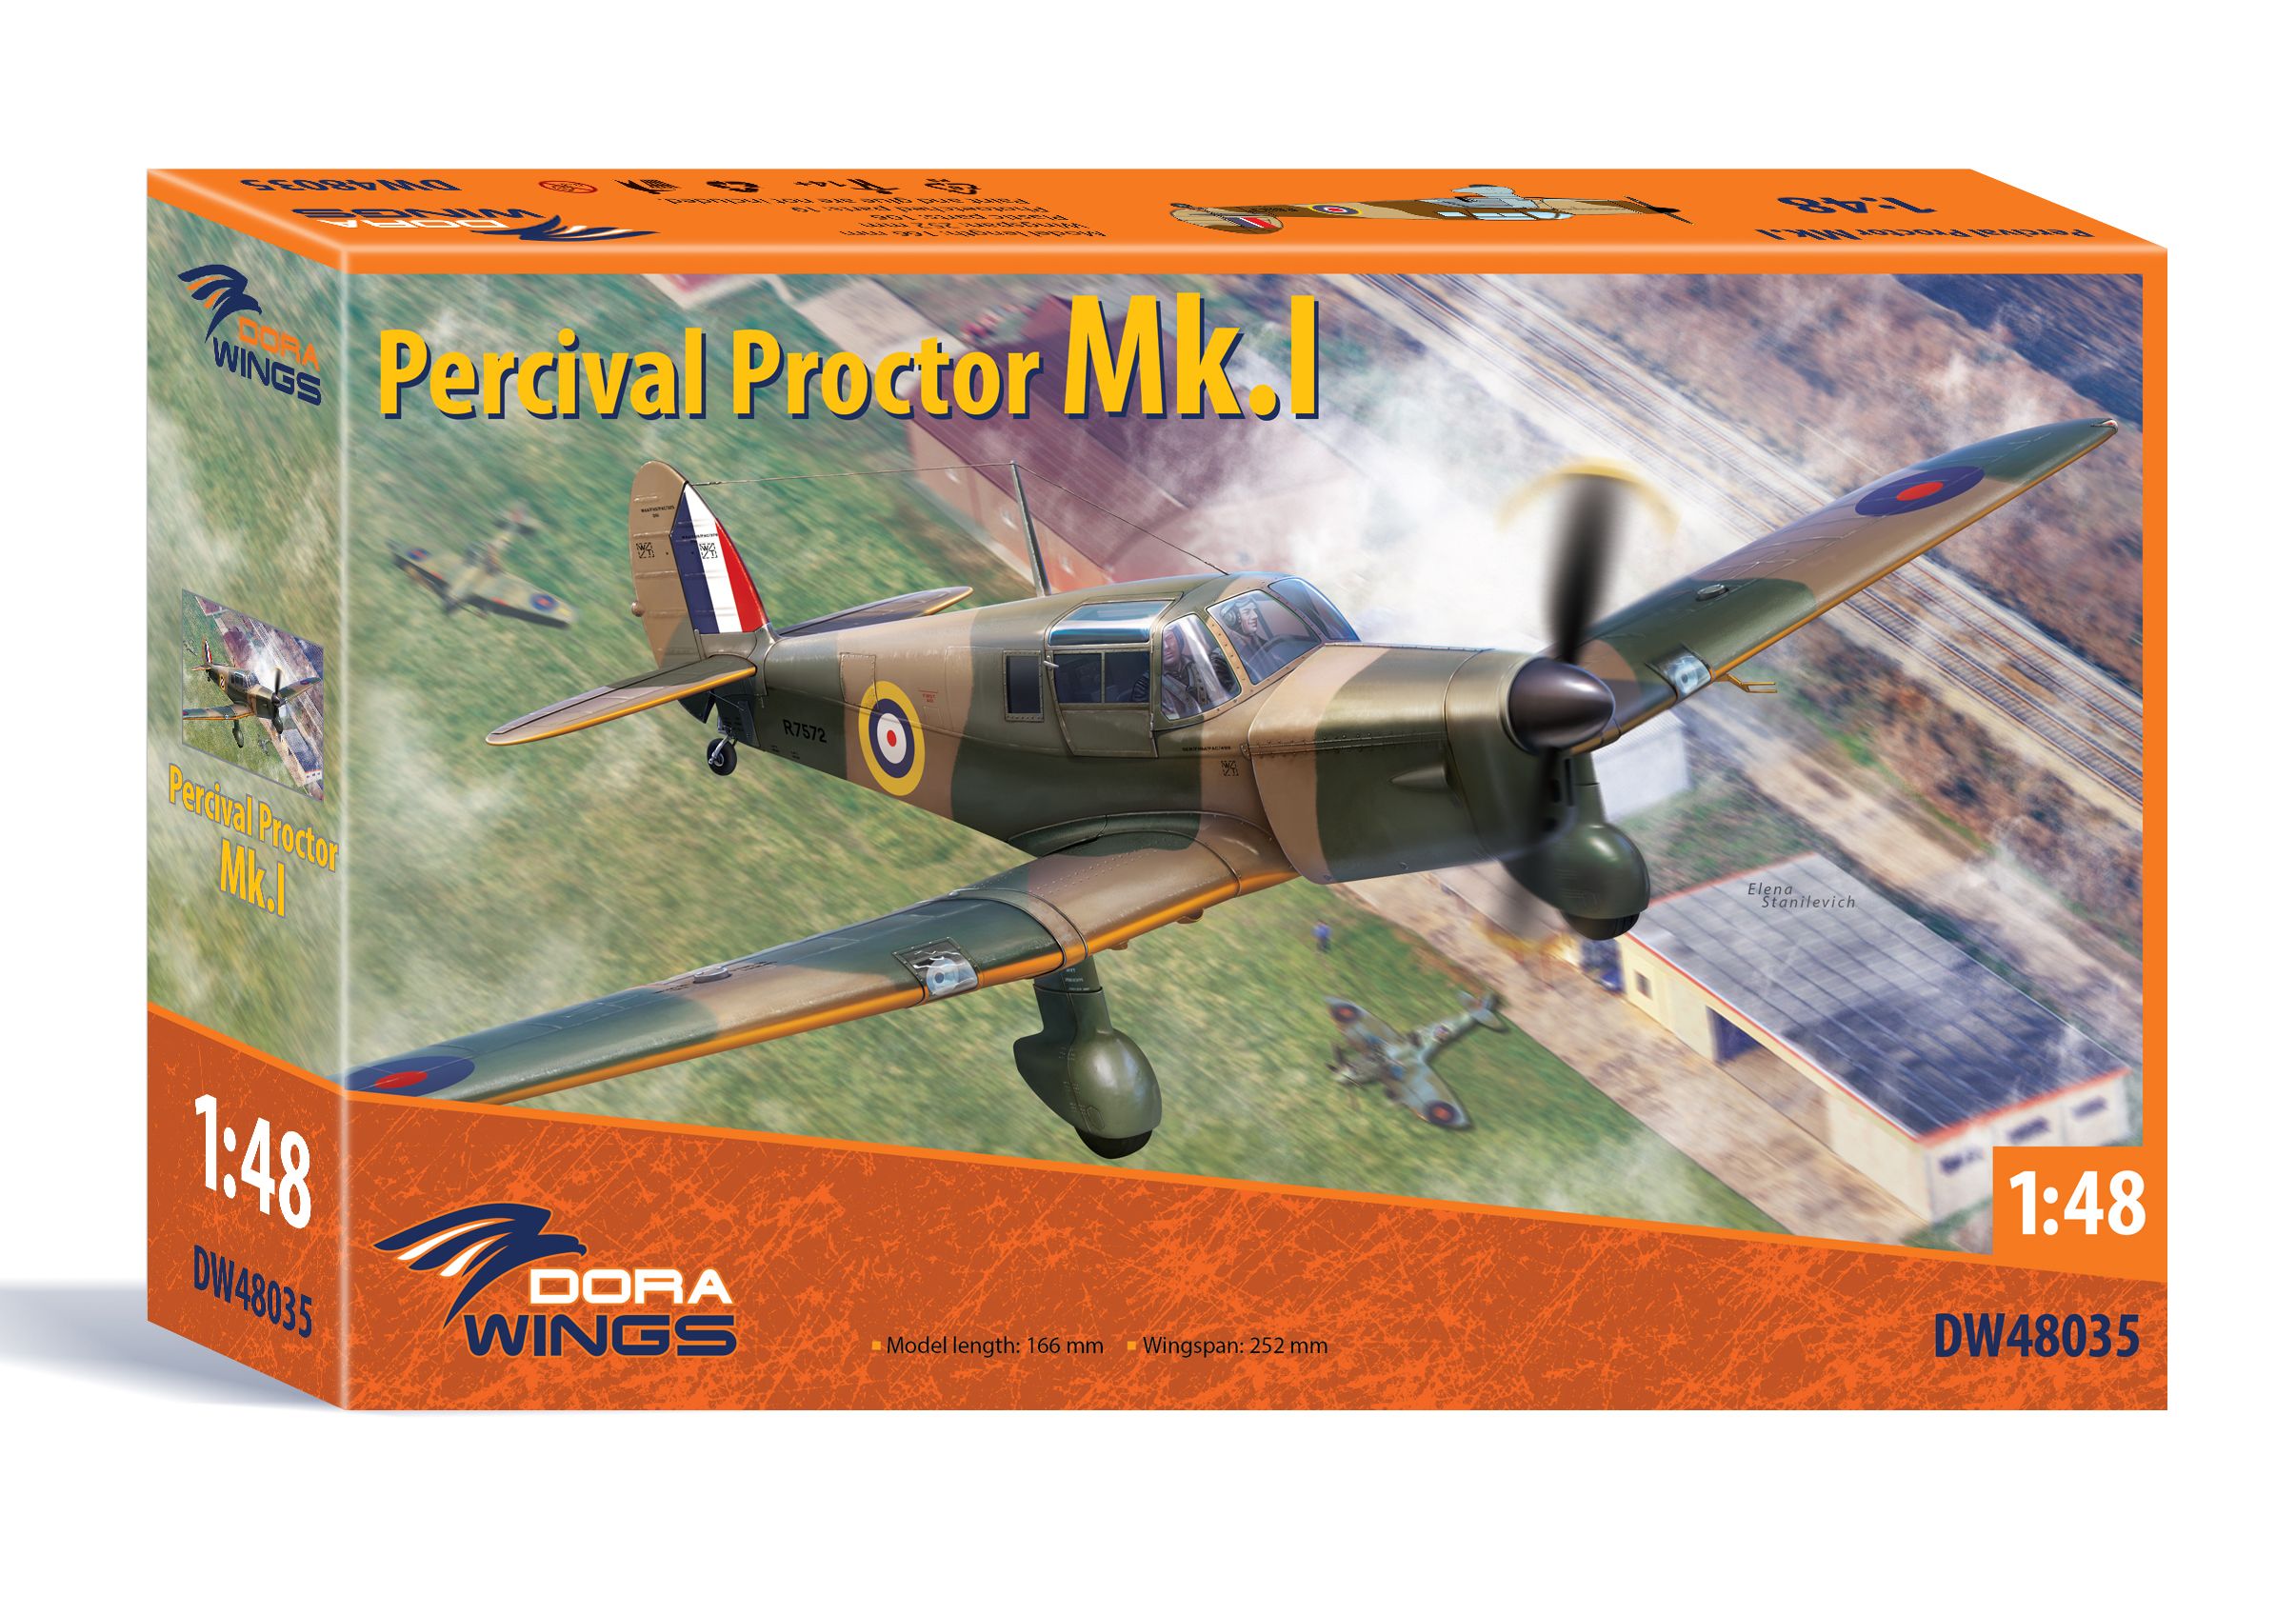 Percival Proctor Mk.I (DW48035)